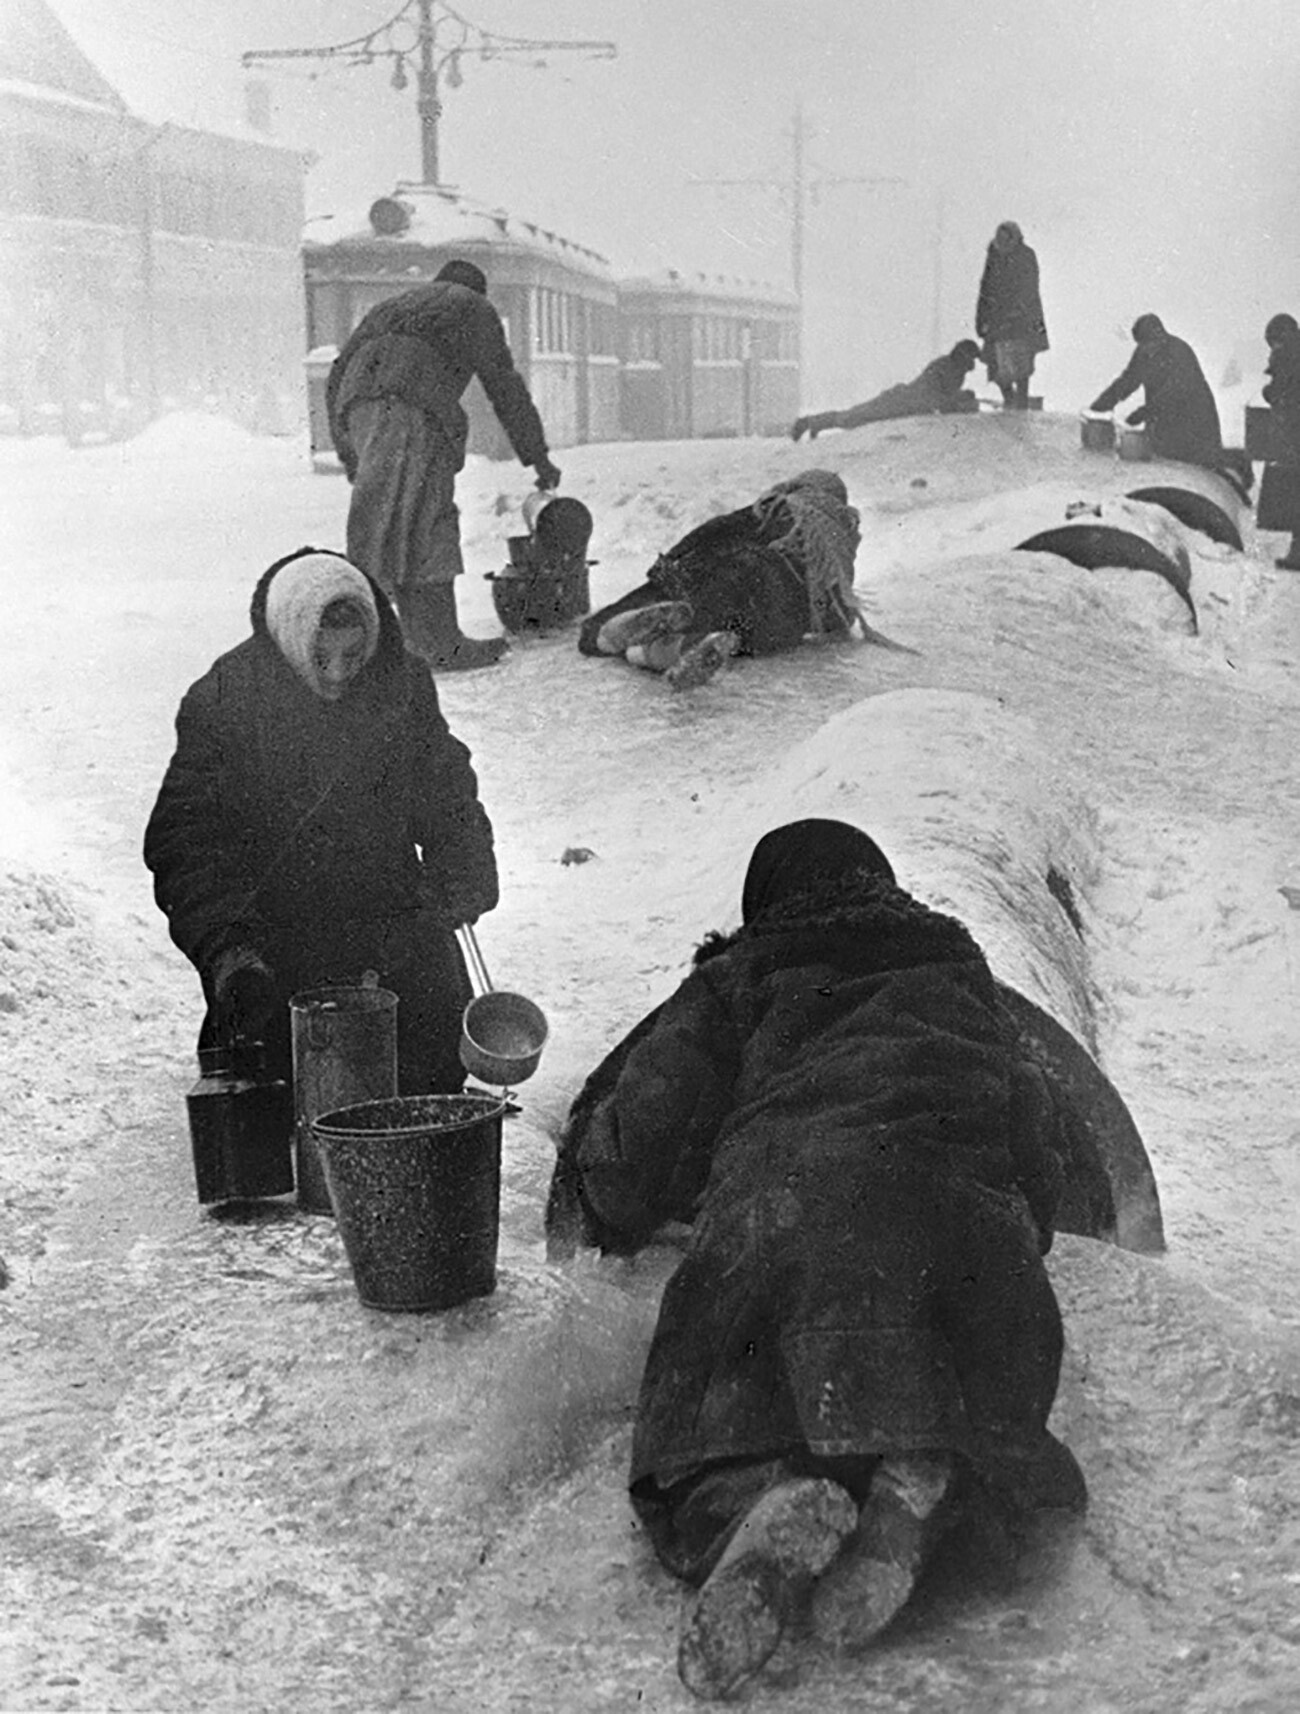 Po vodo. Prebivalci Leningrada na poledeneli ulici prinašajo vodo iz počene vodovodne cevi